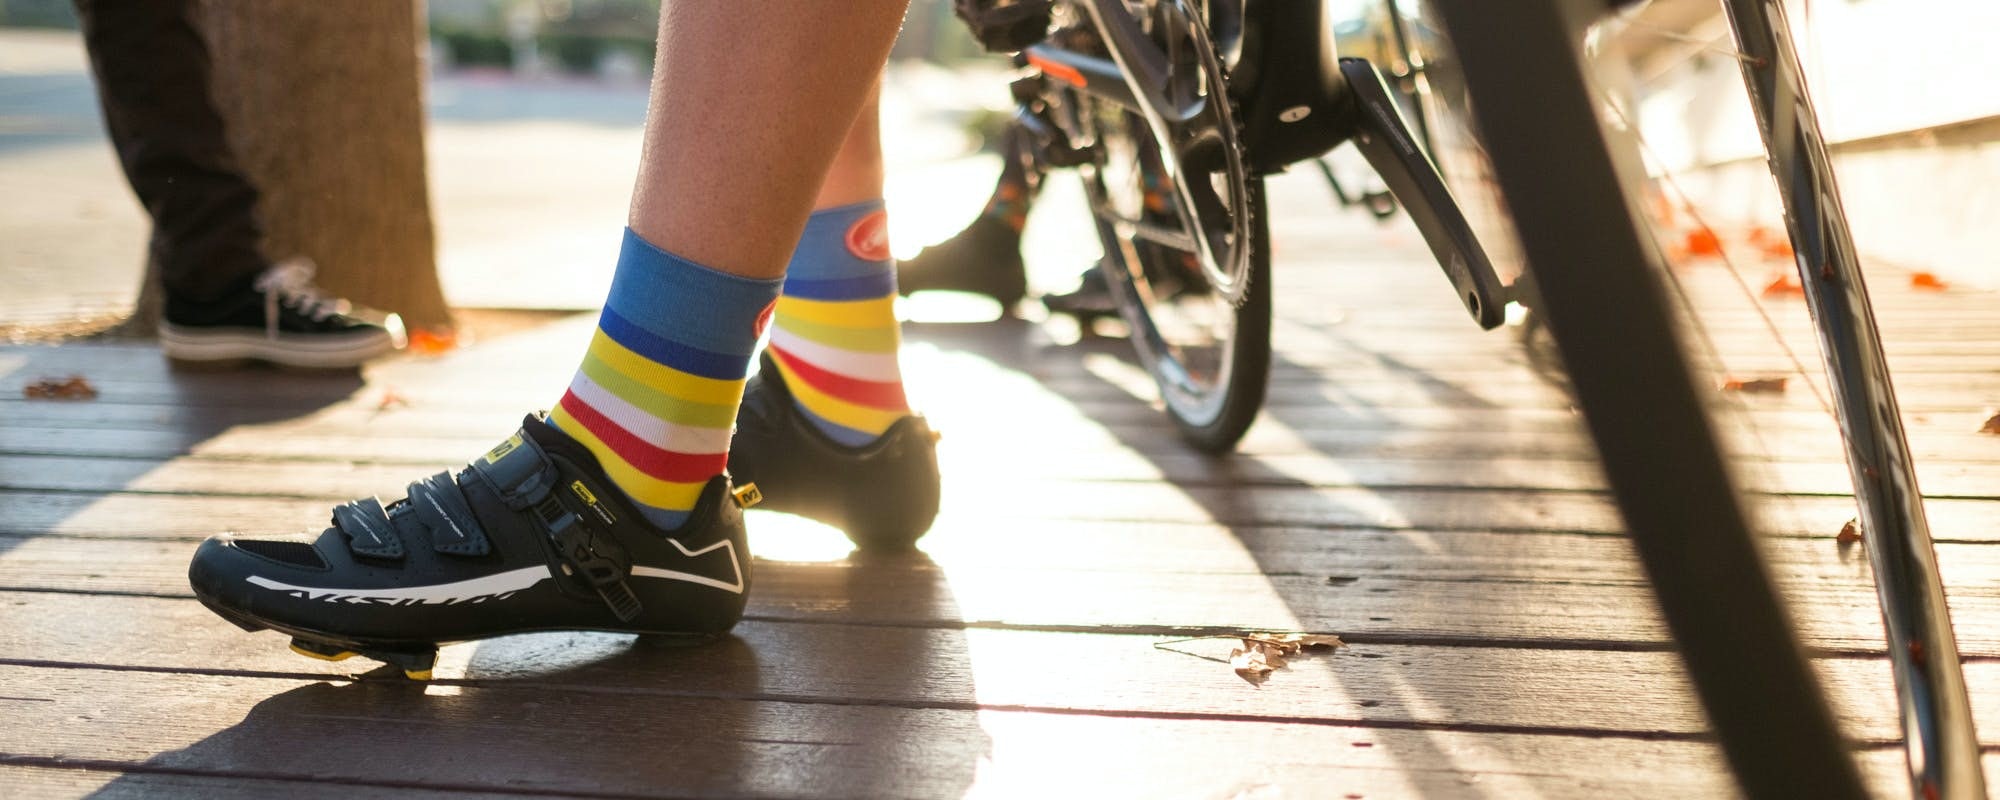 Vue des chaussettes et des chaussures d'un cycliste qui s'appuie sur son vélo.